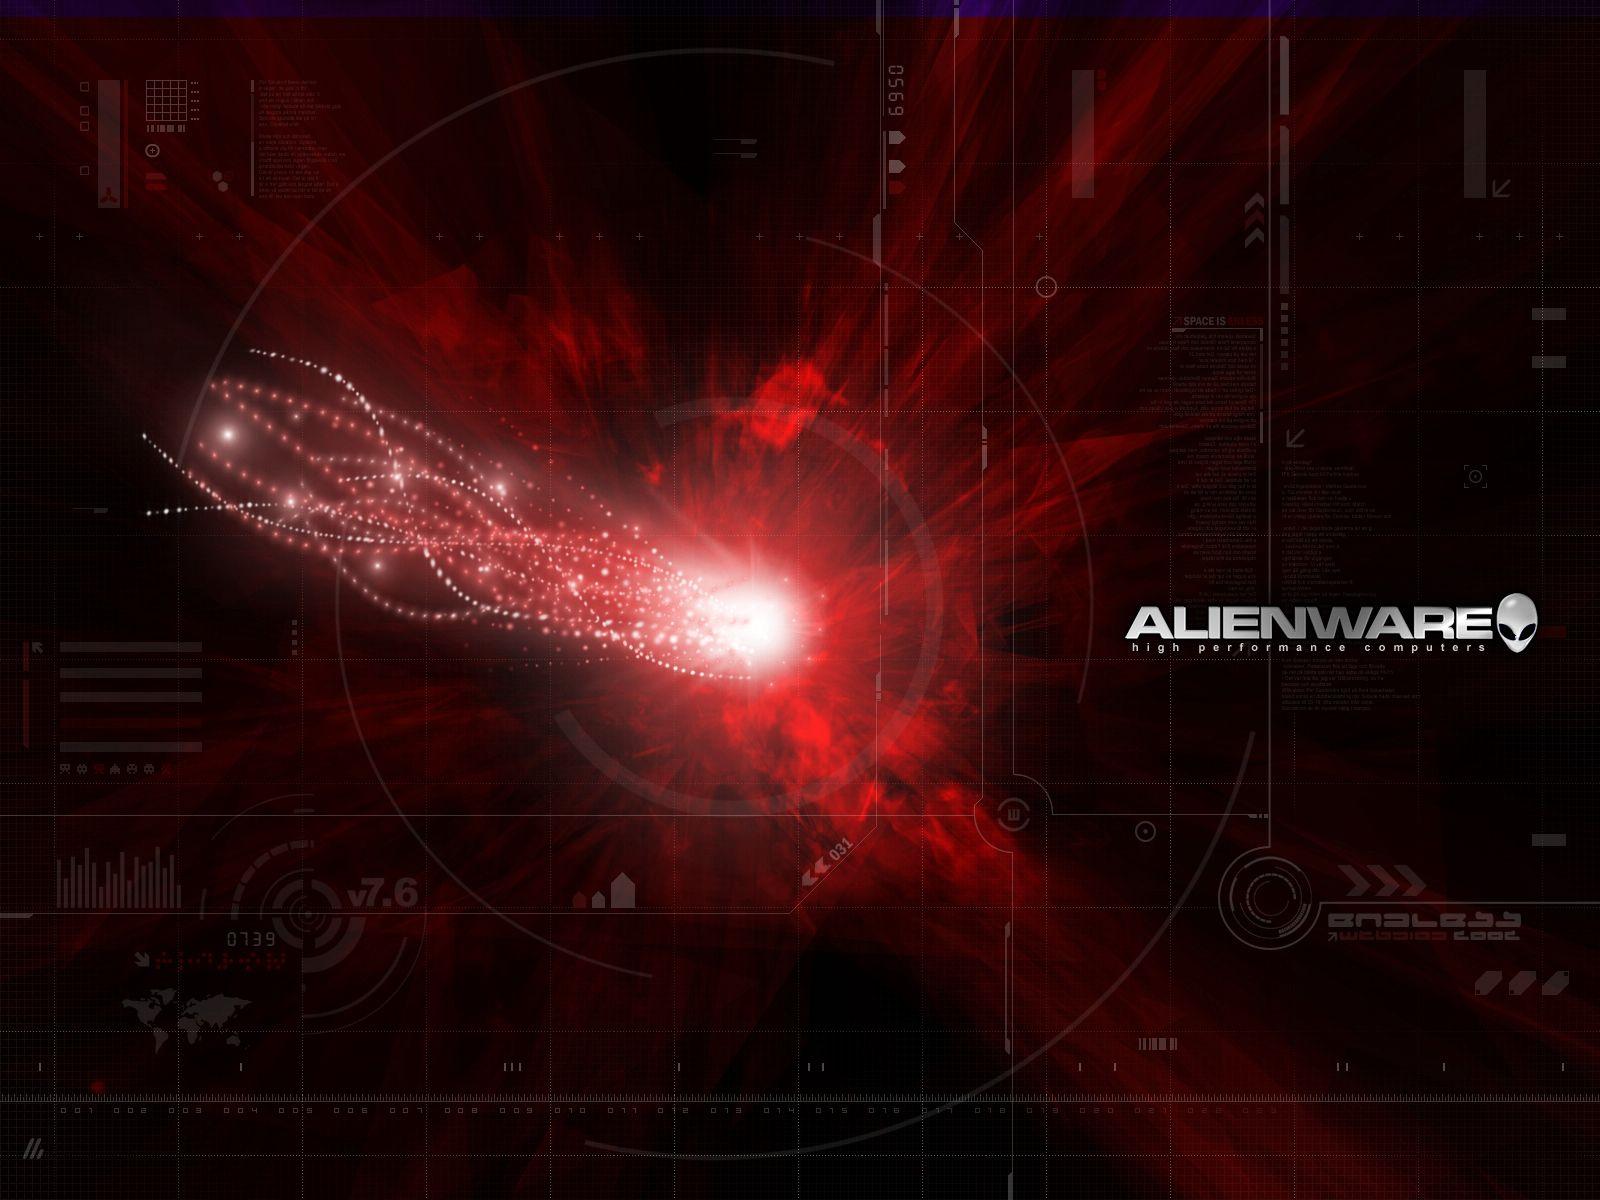 Alienware red wallpaper. Alienware red